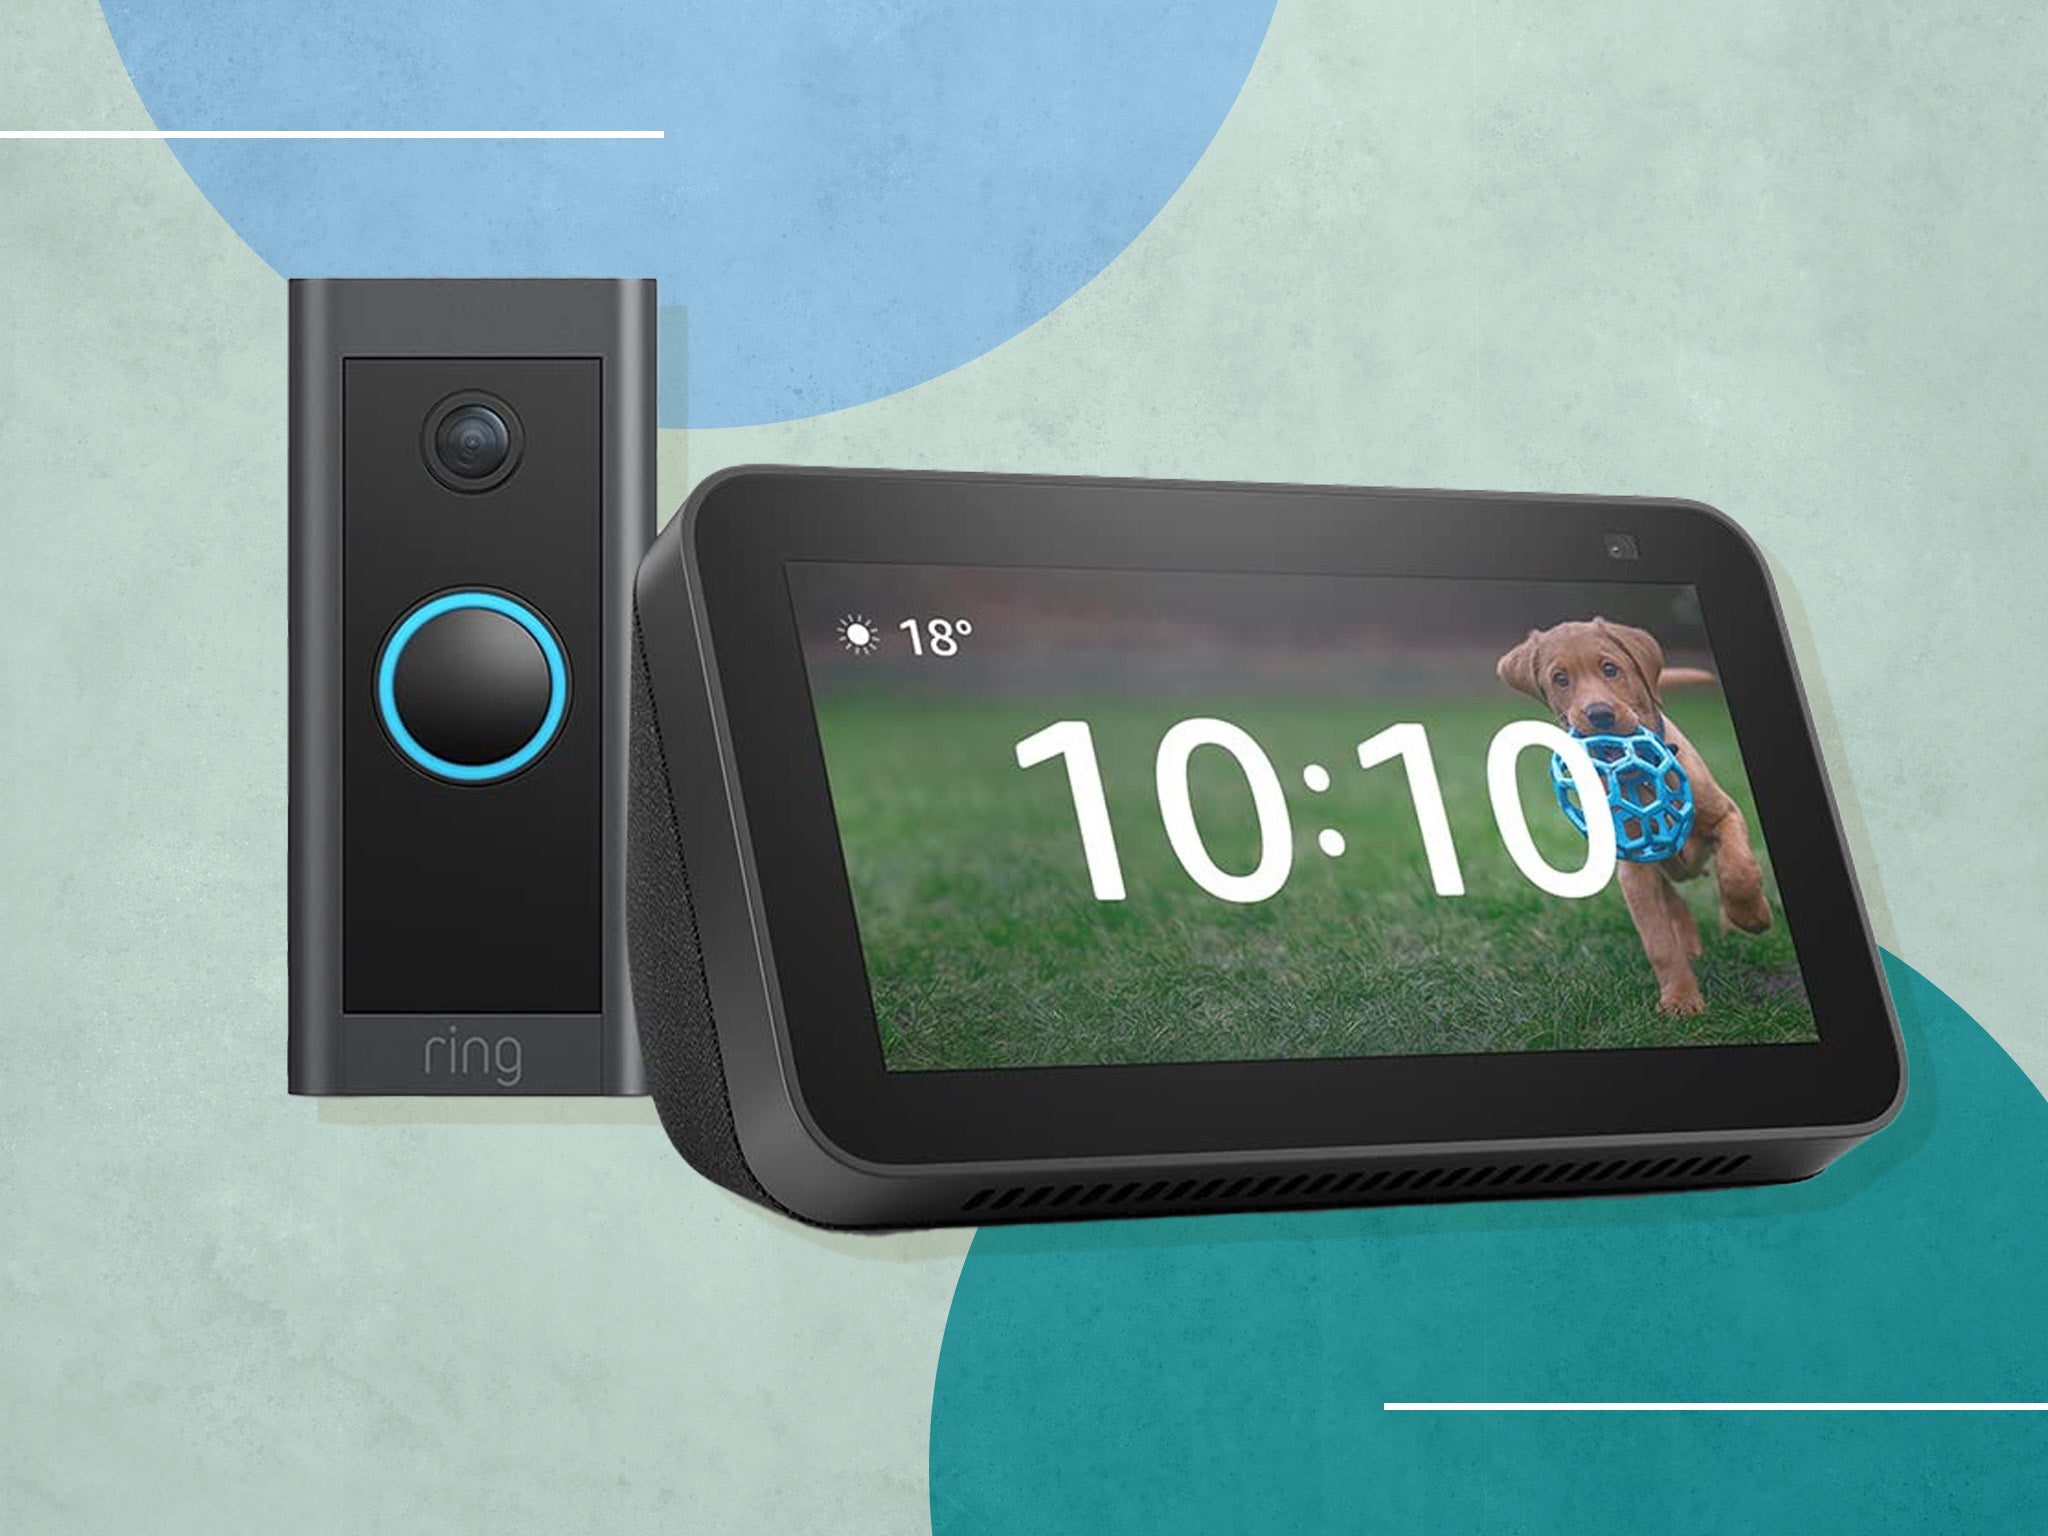 Buy RING Video Doorbell (Wired) &  Echo Show 5 Smart Display Bundle